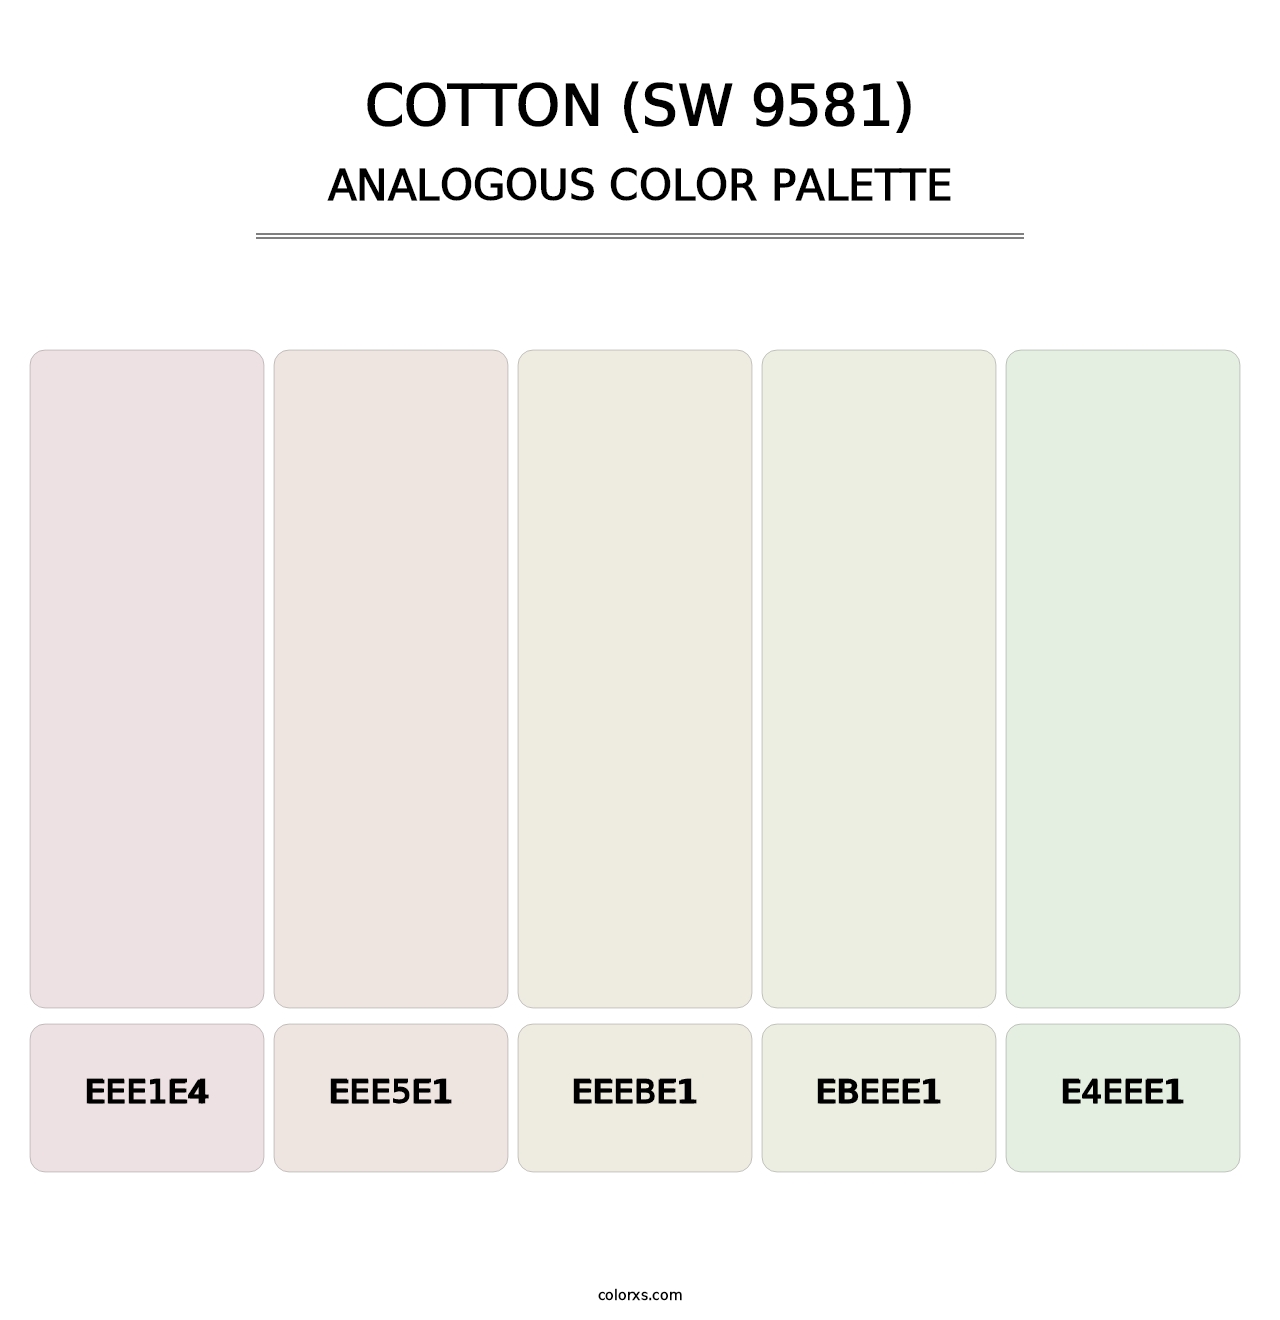 Cotton (SW 9581) - Analogous Color Palette